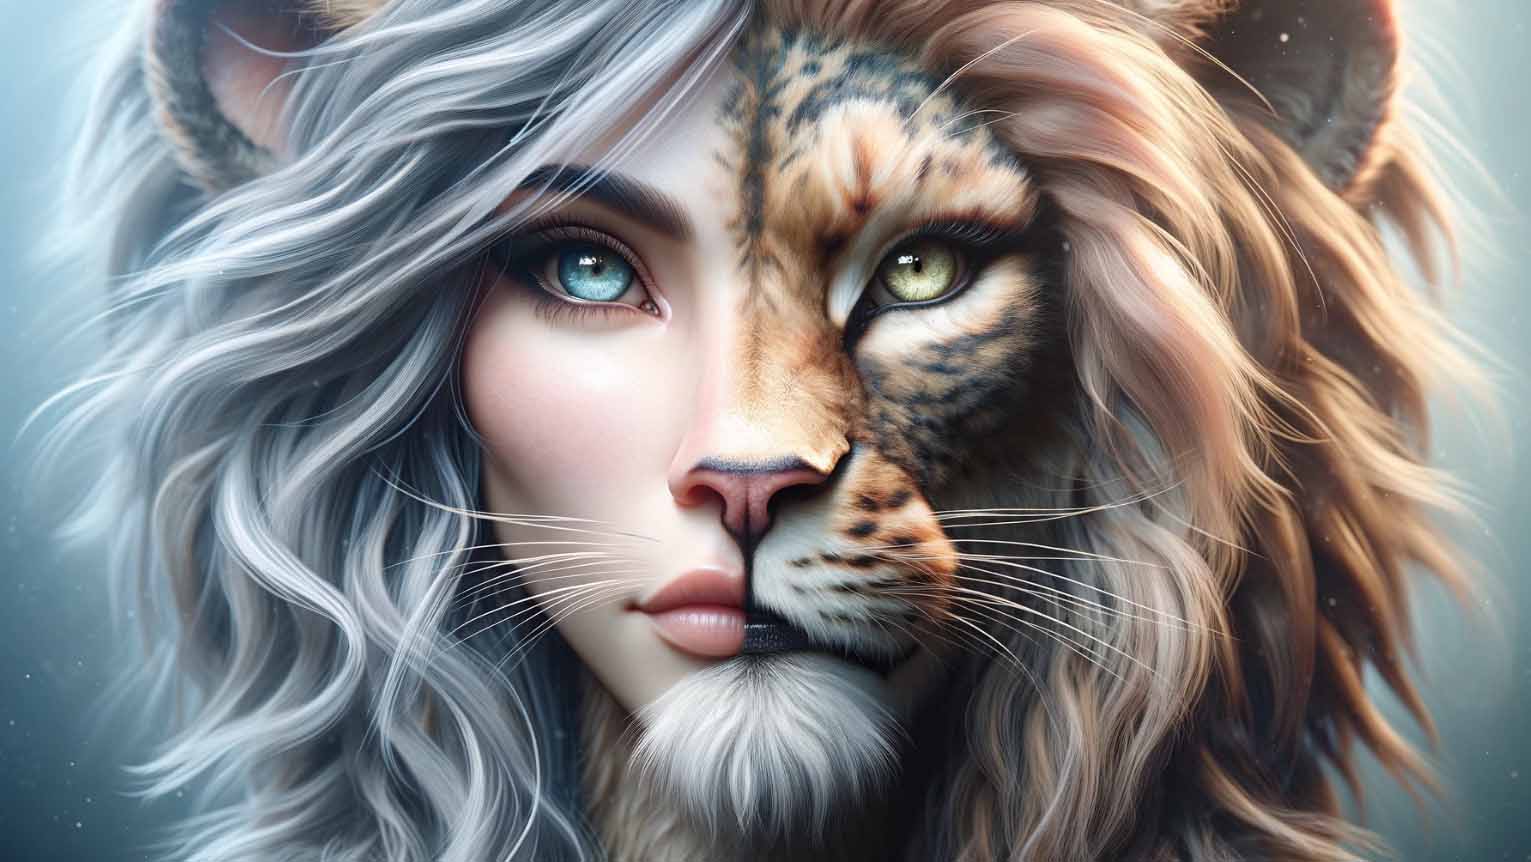 A face, part female, part lion